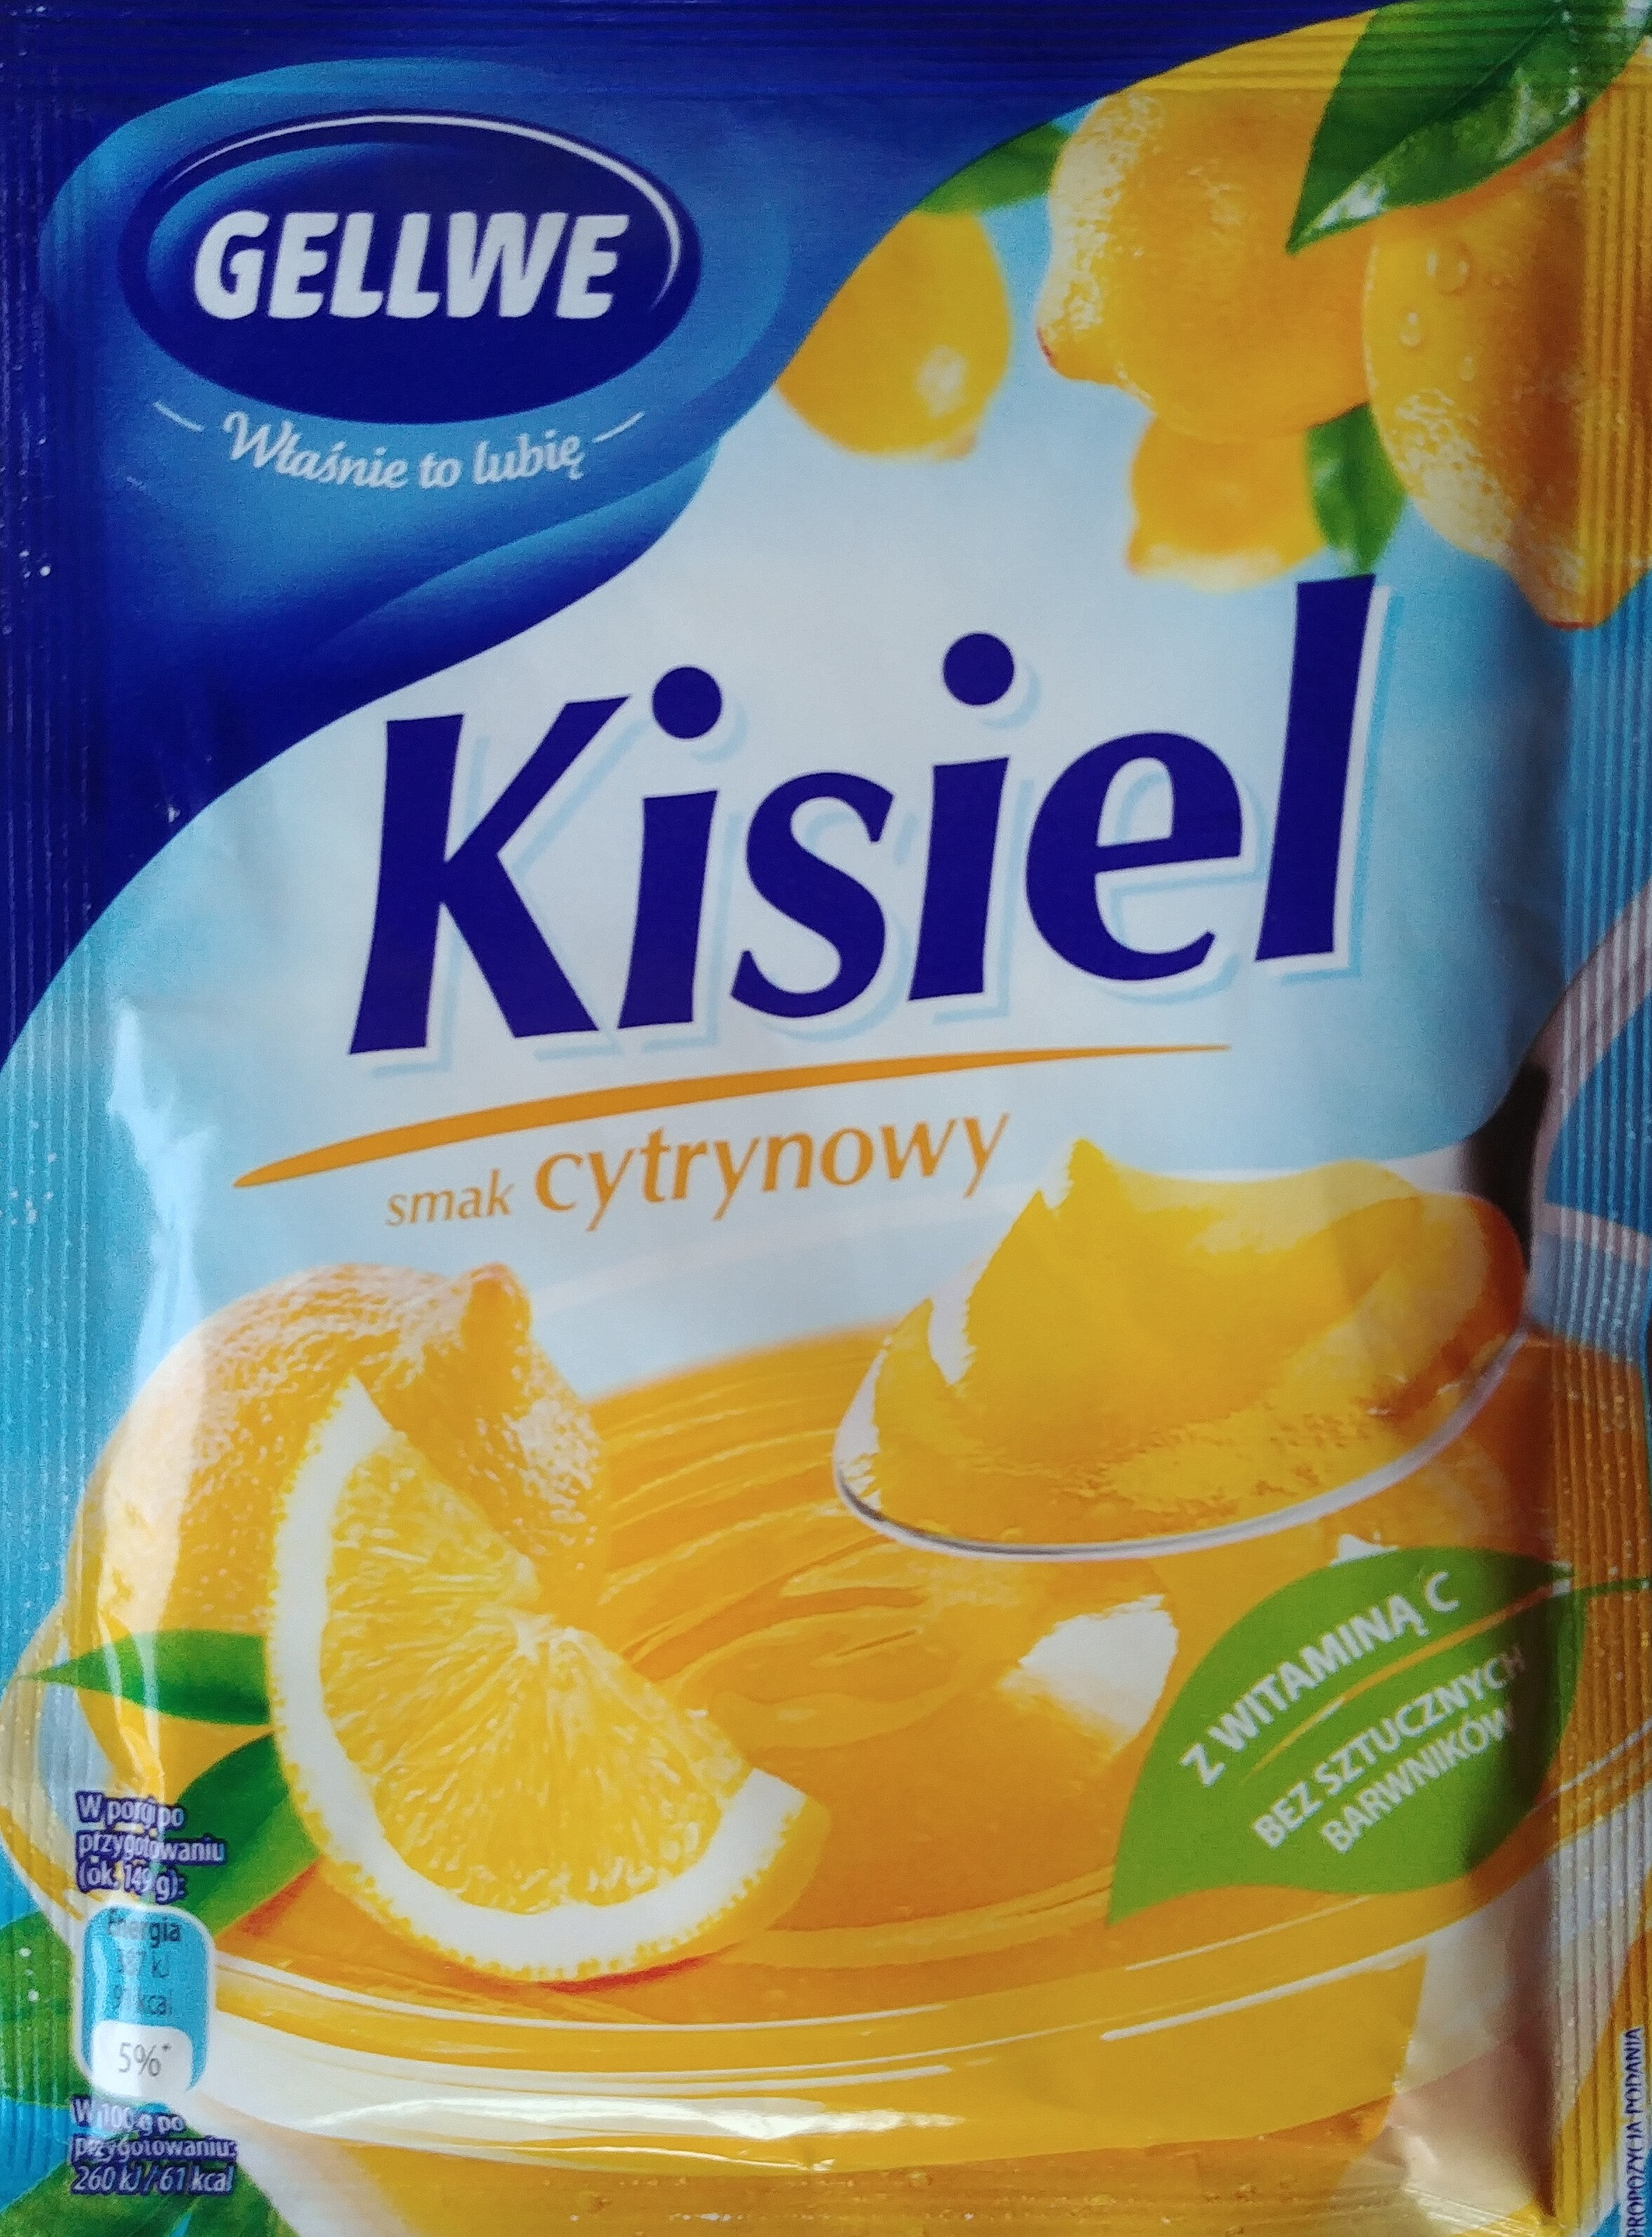 Kisiel smak cytrynowy z witaminą C w proszku. - Product - pl